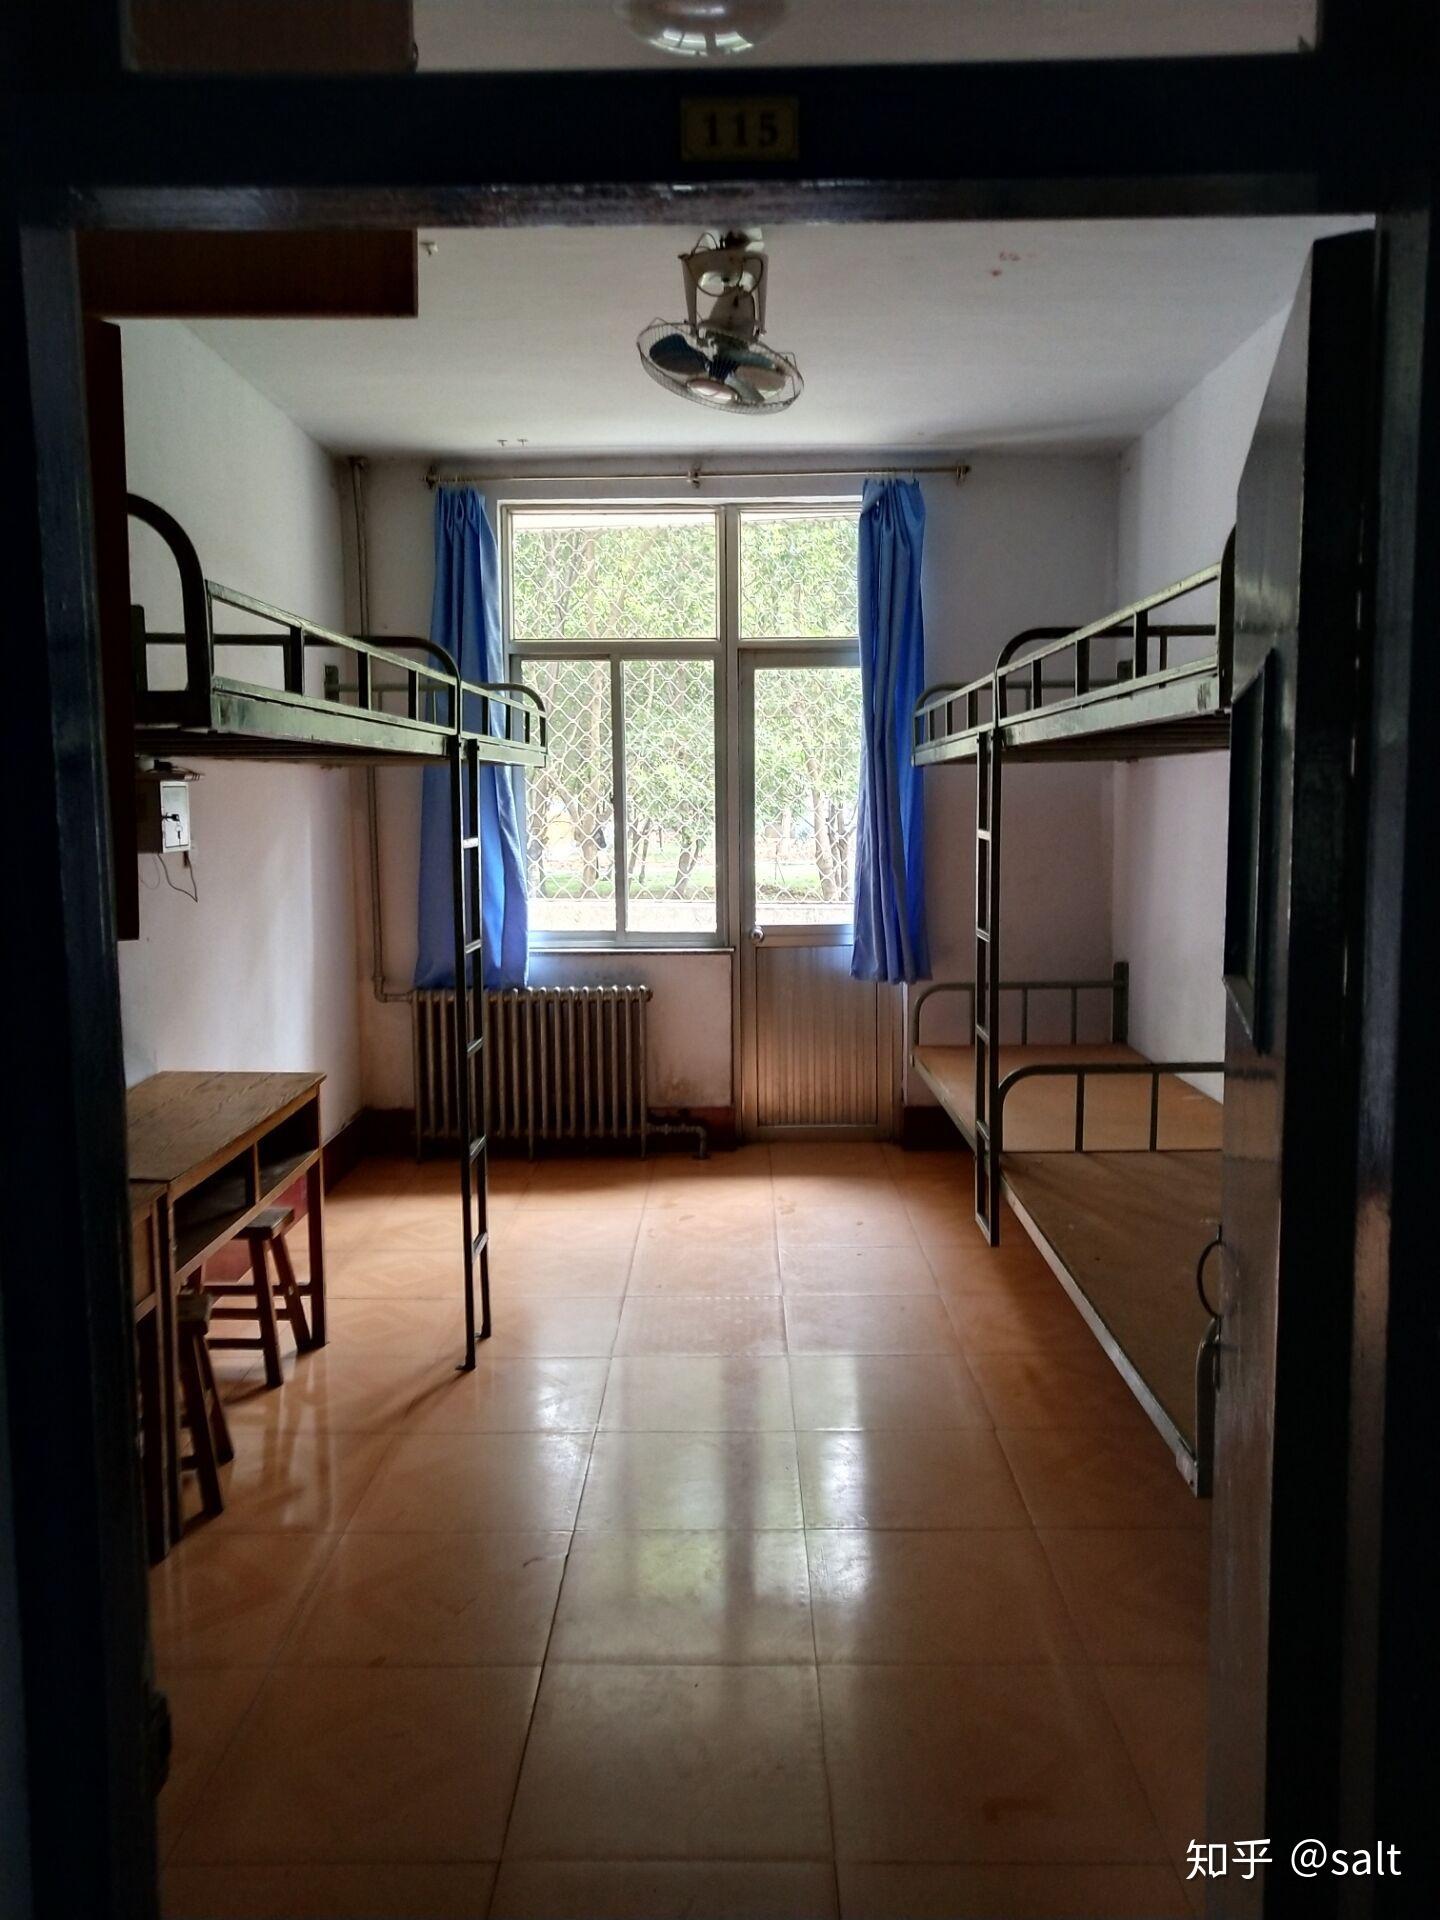 烟台南山学院的宿舍图片